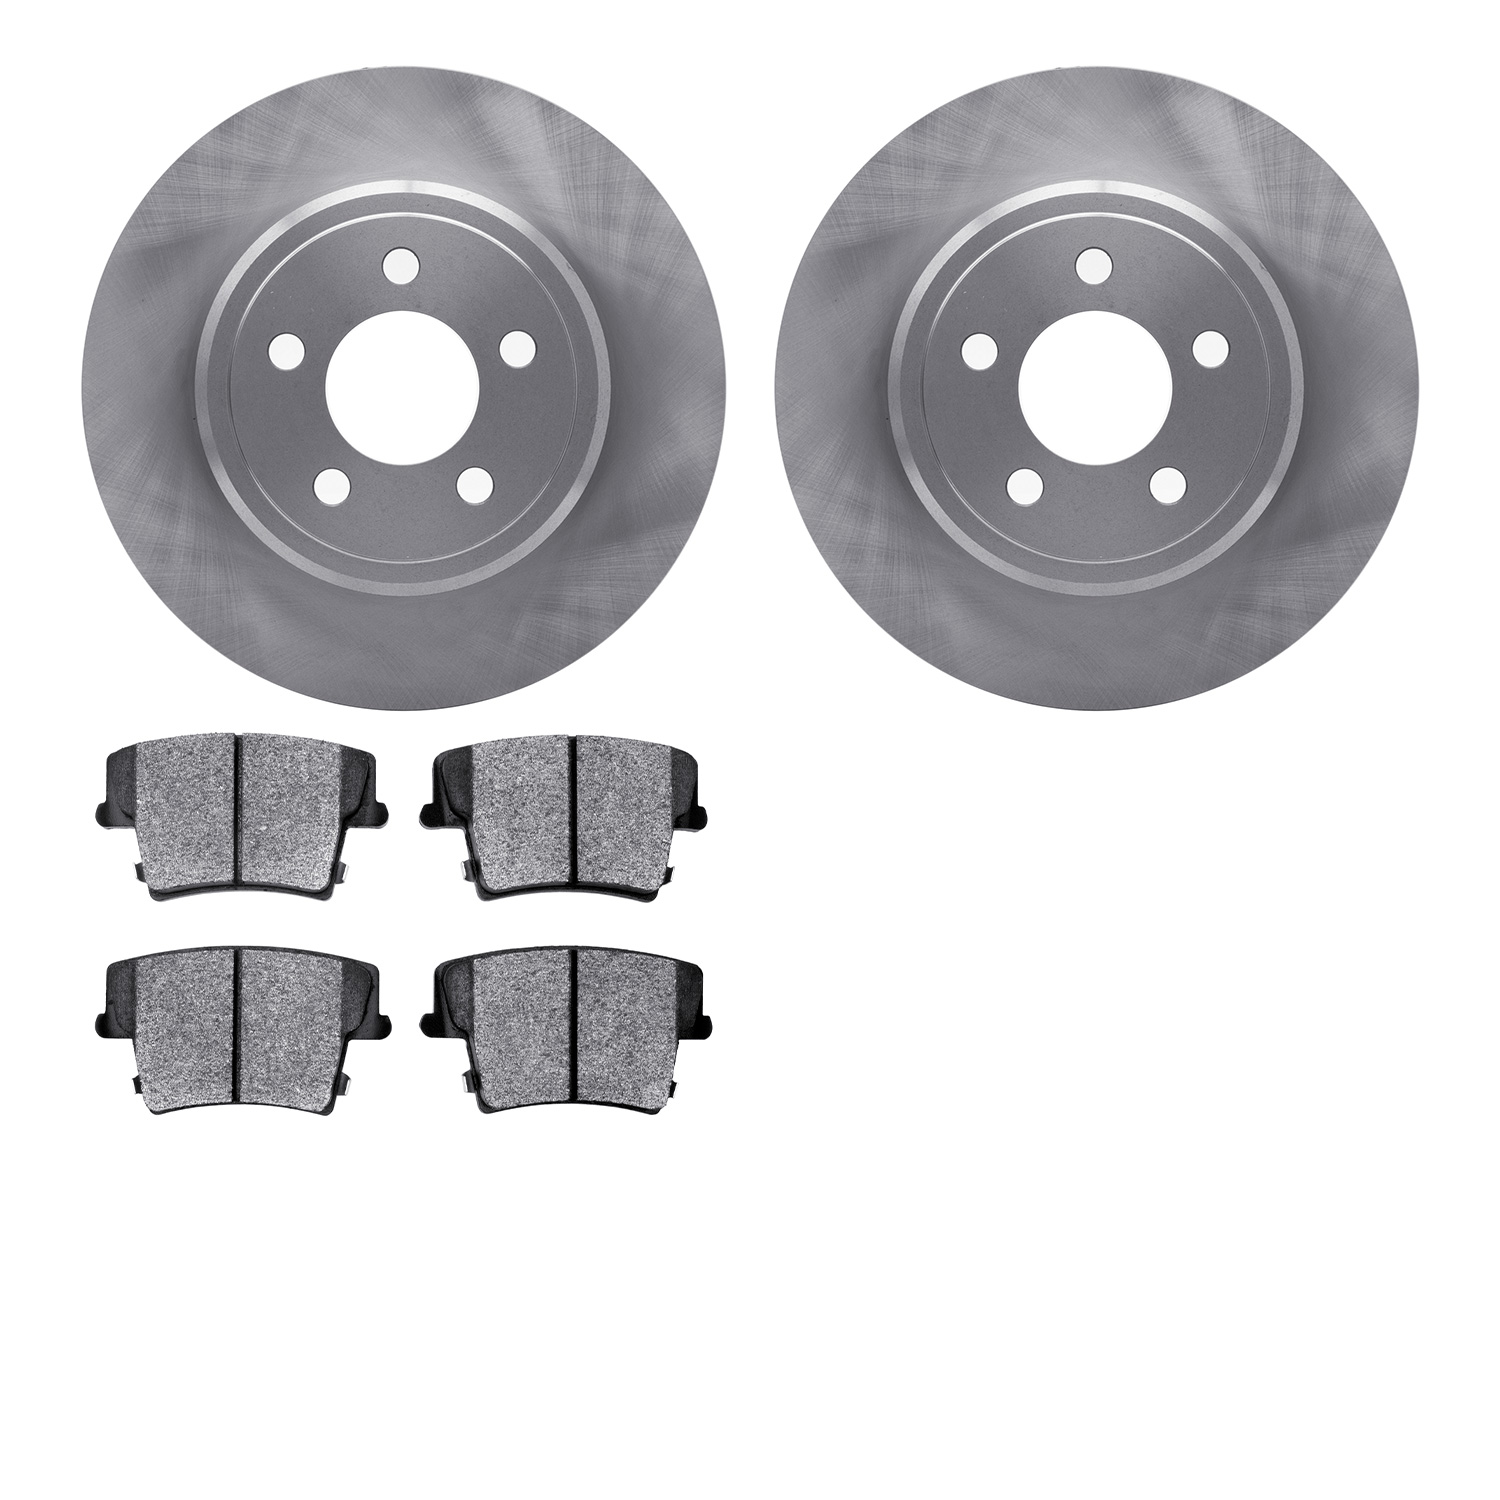 6202-39095 Brake Rotors w/Heavy-Duty Brake Pads Kit, Fits Select Mopar, Position: Rear